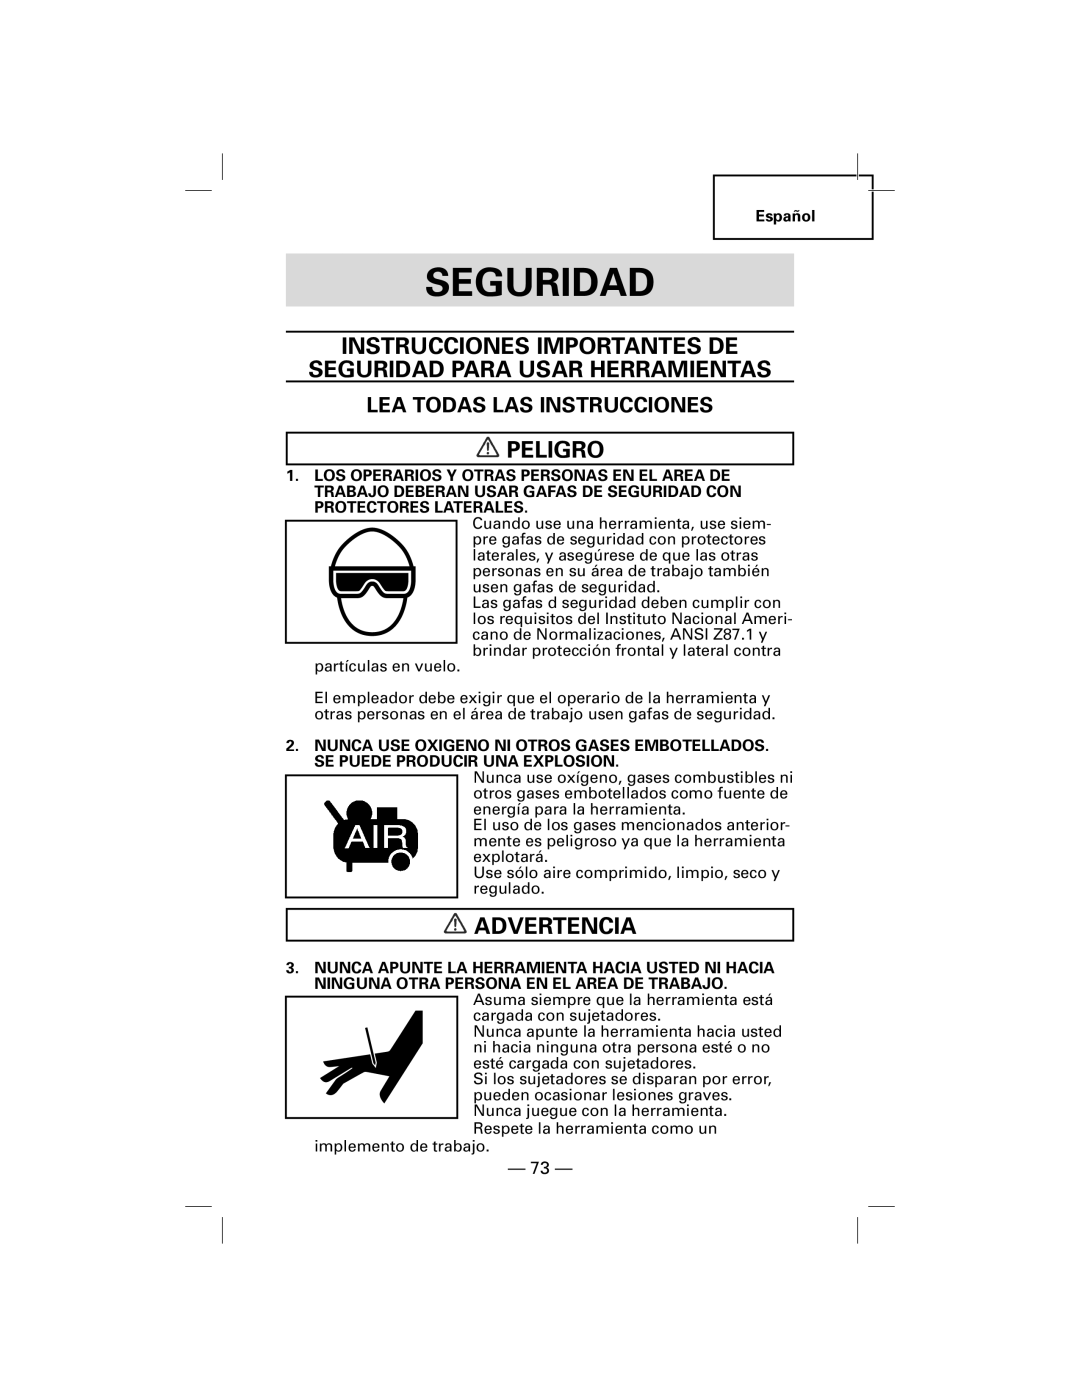 Hitachi NT50AF, N5009AF manual Instrucciones Importantes De, Seguridad Para Usar Herramientas, Peligro, Advertencia 